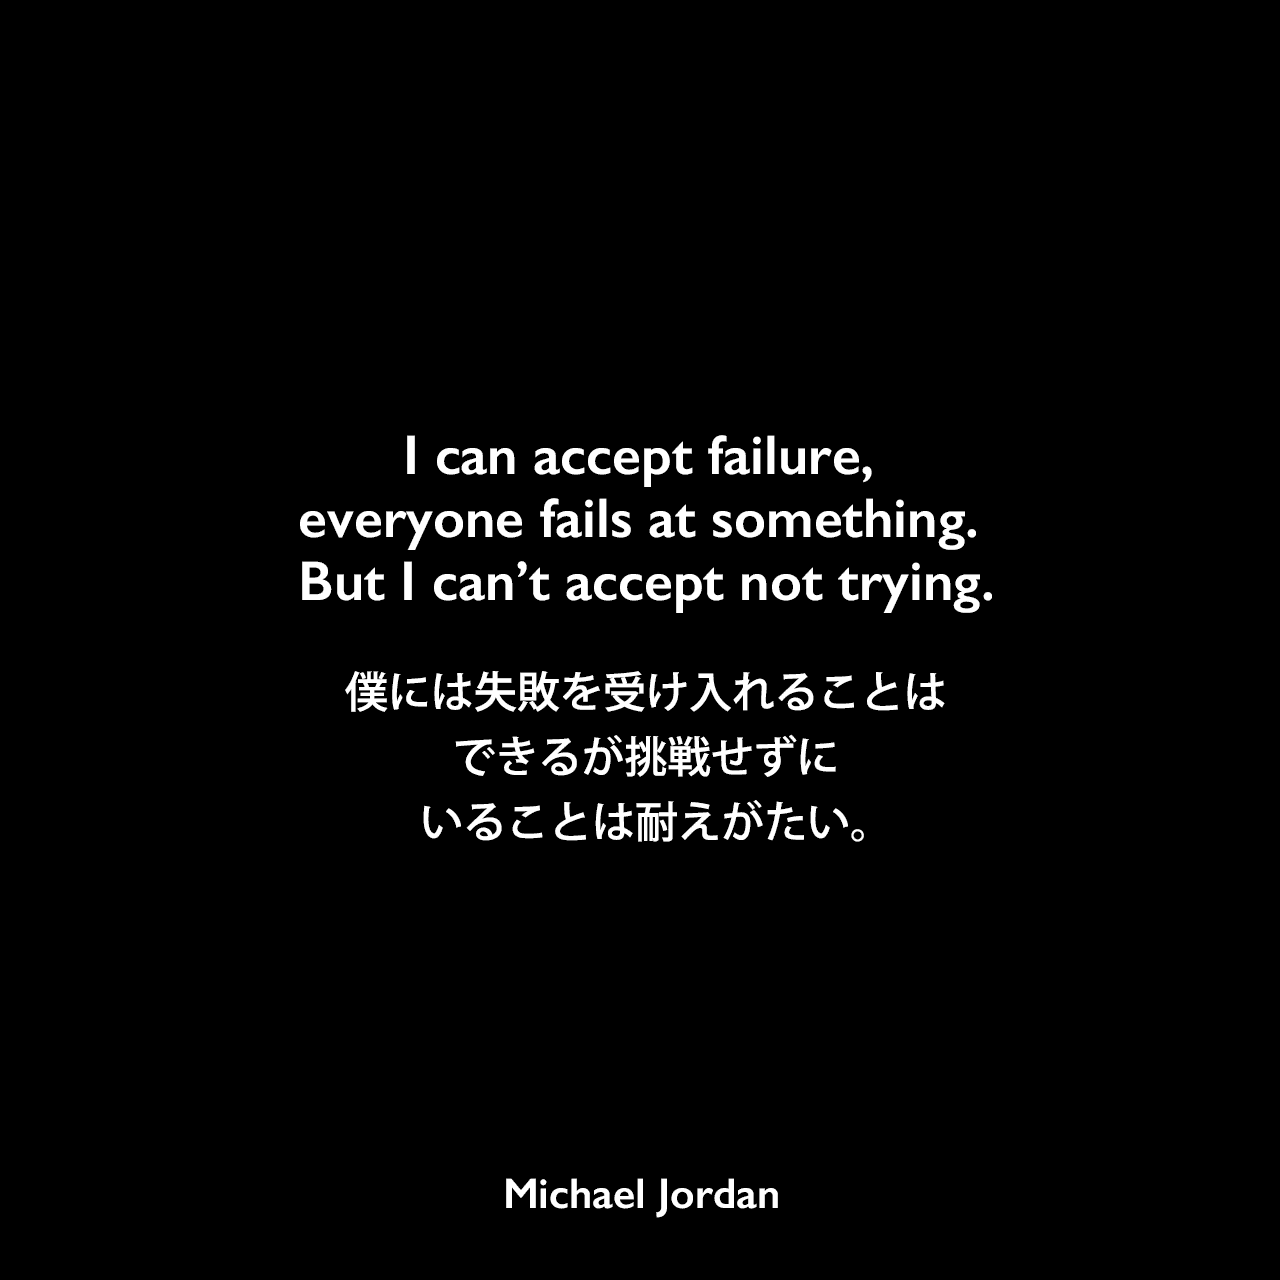 I can accept failure, everyone fails at something. But I can’t accept not trying.僕には失敗を受け入れることはできるが、挑戦せずにいることは耐えがたい。Michael Jordan